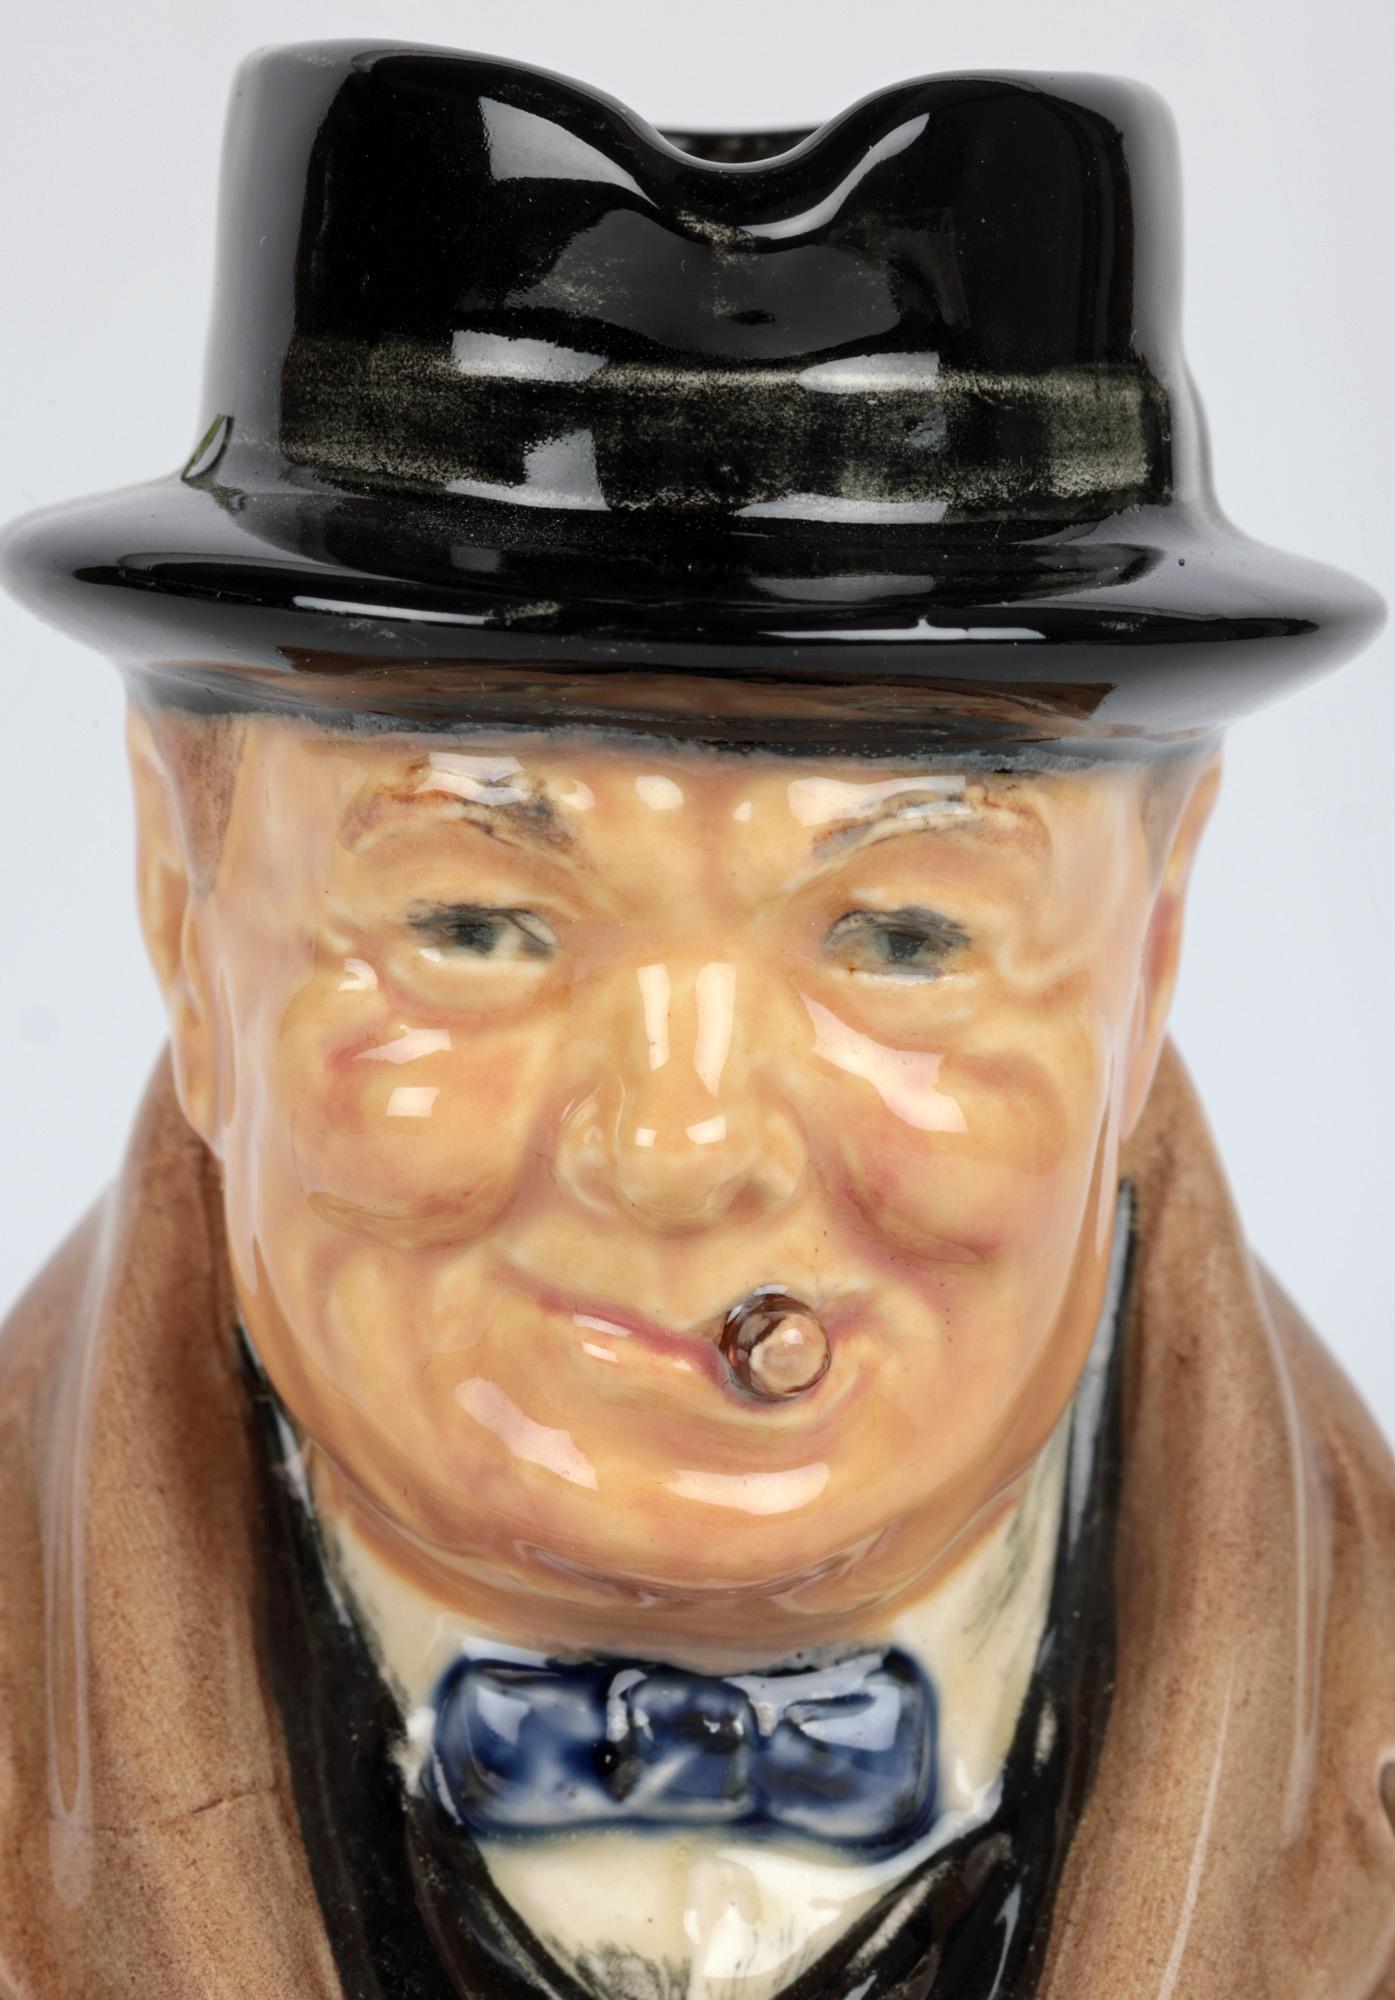 Ein stilvoller und seltener Royal Doulton Winston Churchill Charakterkrug, von dem man annimmt, dass er zum Gedenken an seine Ernennung zum Premierminister am 10. Mai 1940 hergestellt und entsprechend datiert wurde. Die kleine Keramikkanne zeigt ihn